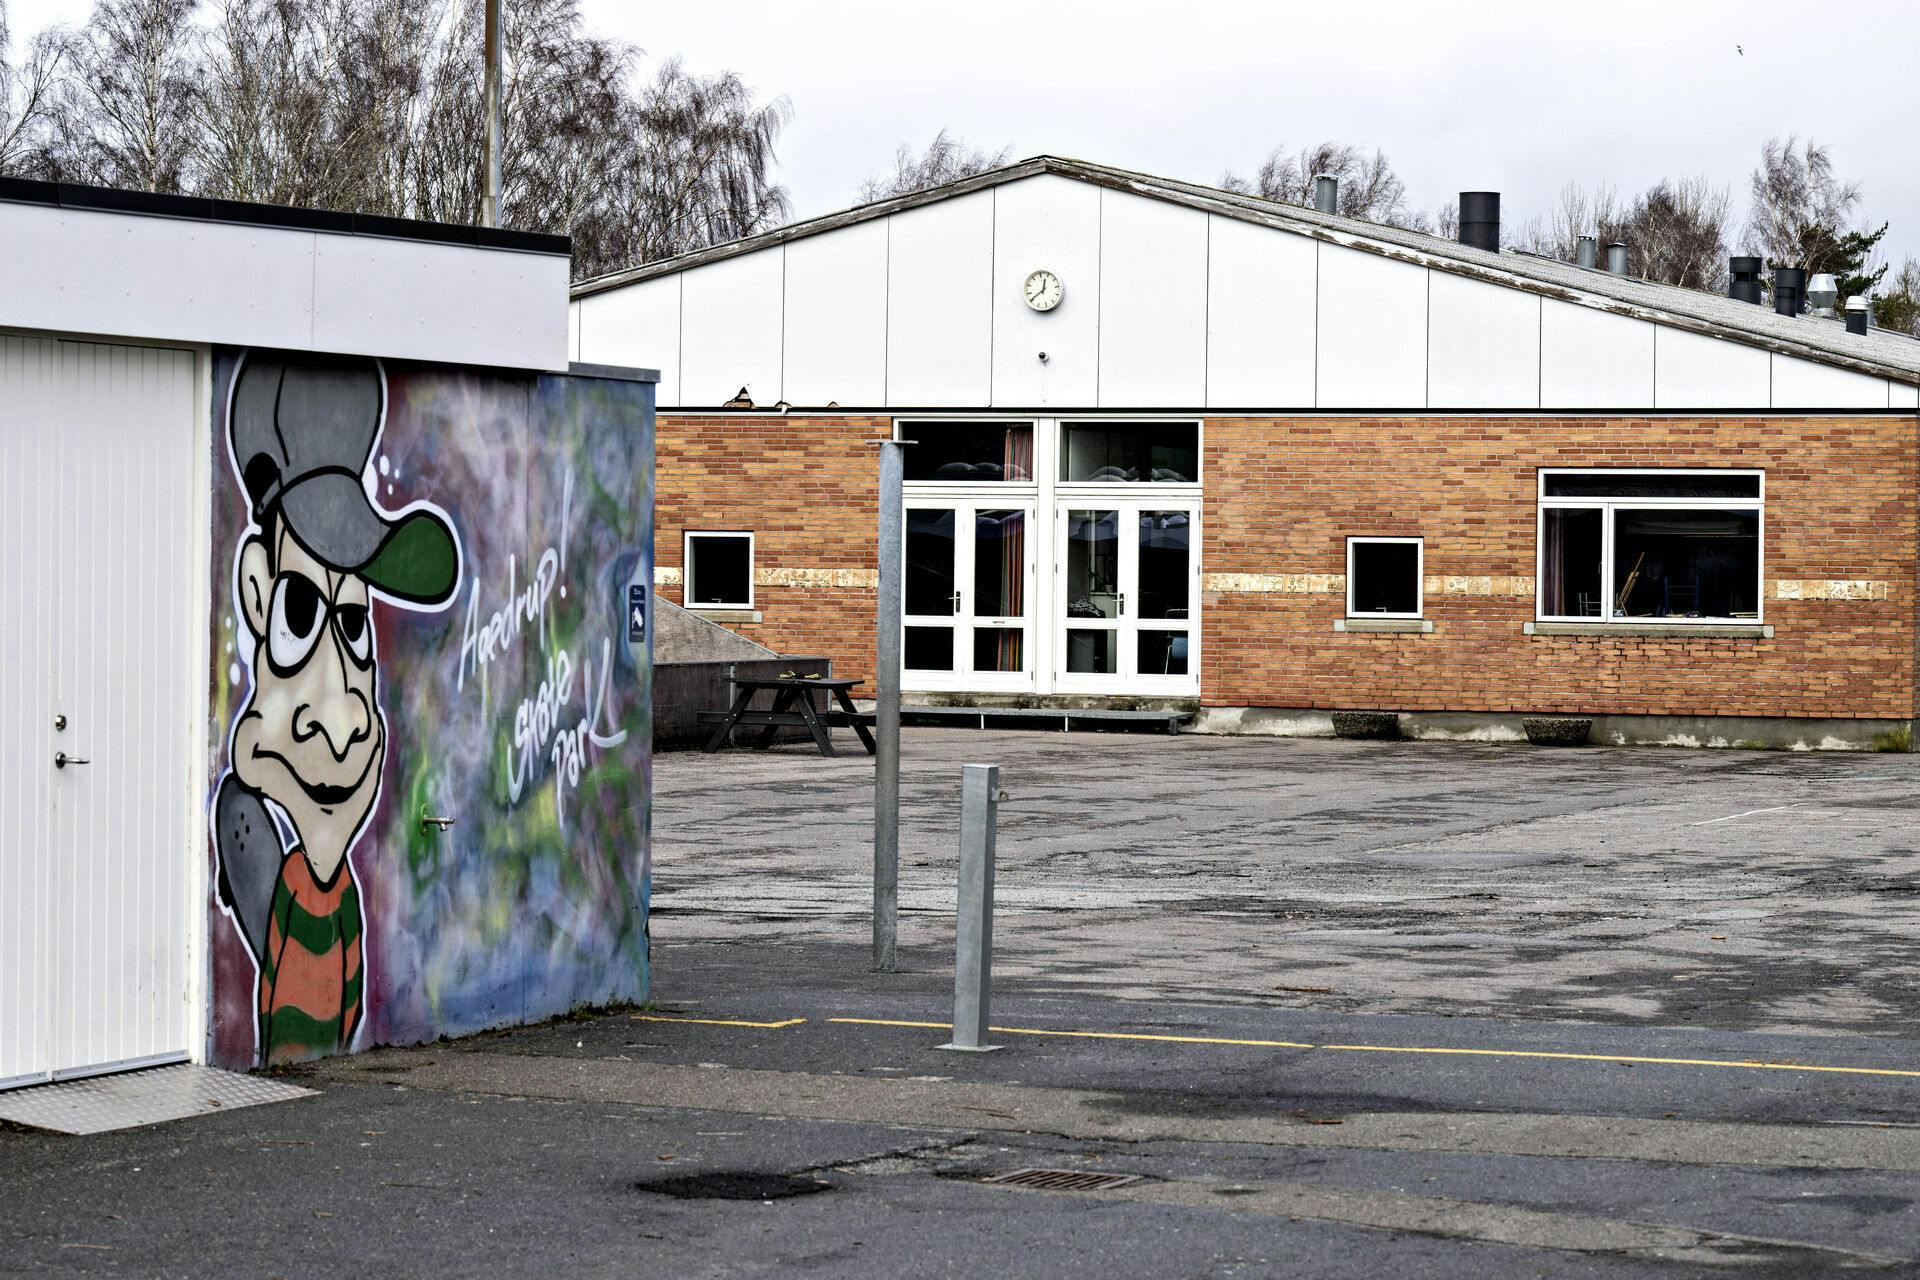 Agedrup Skole i Odense Kommune har den seneste tid været genstand for stor kritik i forbindelse med voldsomme episoder blandt eleverne - fredag har politiet været til stede på skolen, fordi en elev angiveligt er blevet truet med en kniv.